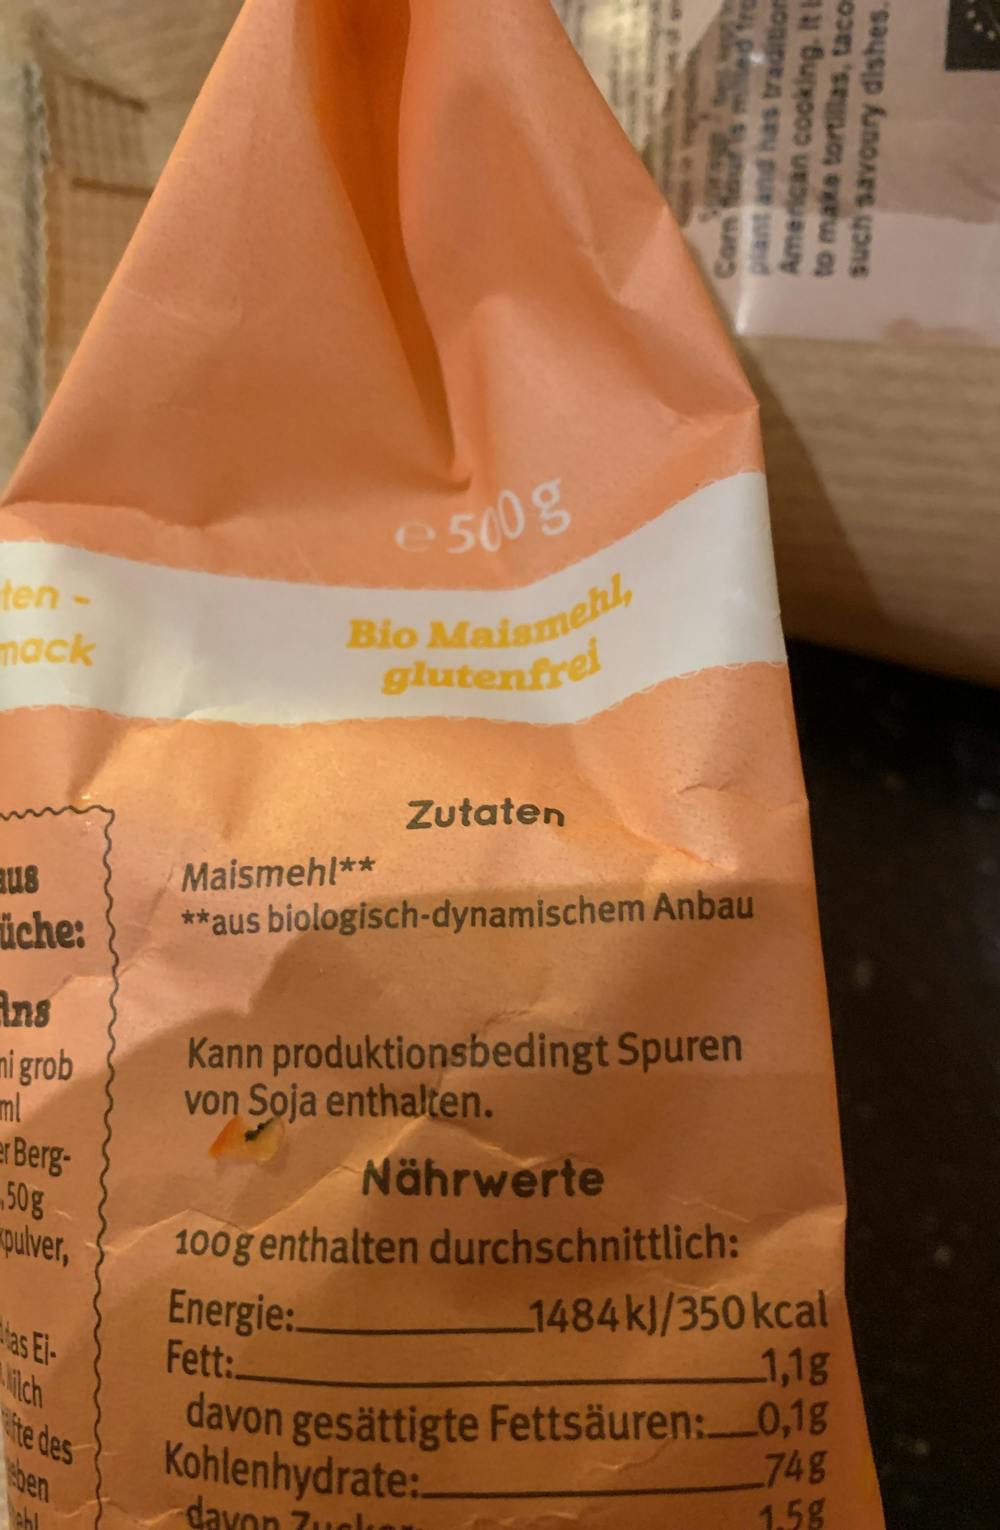 Ingredienslisten til Mais mehl, Bavck hof